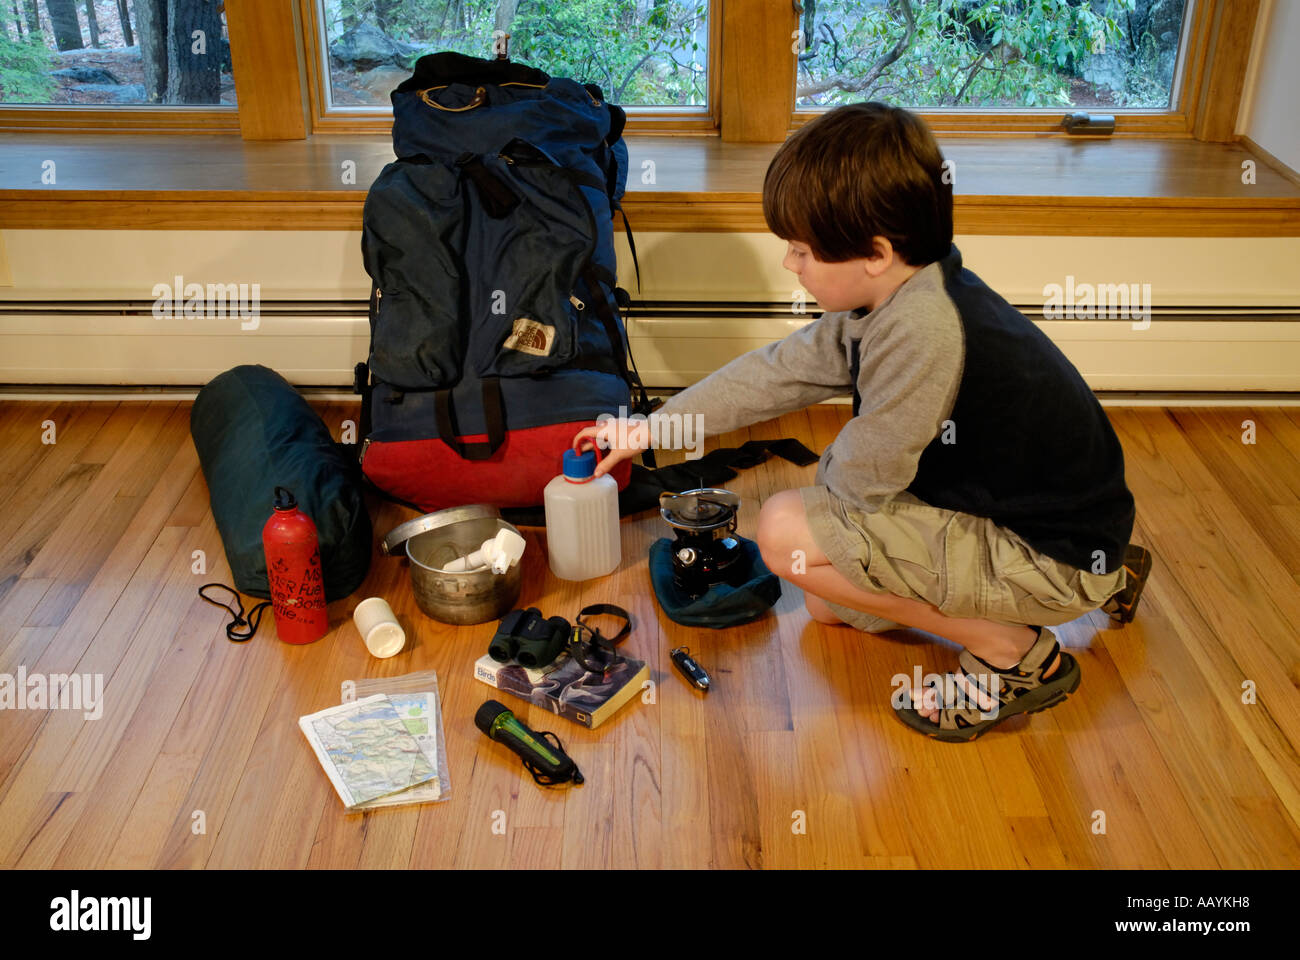 Junge für Wasserflasche zu erreichen, da er seine Campingausrüstung für einen Ausflug packt Stockfoto